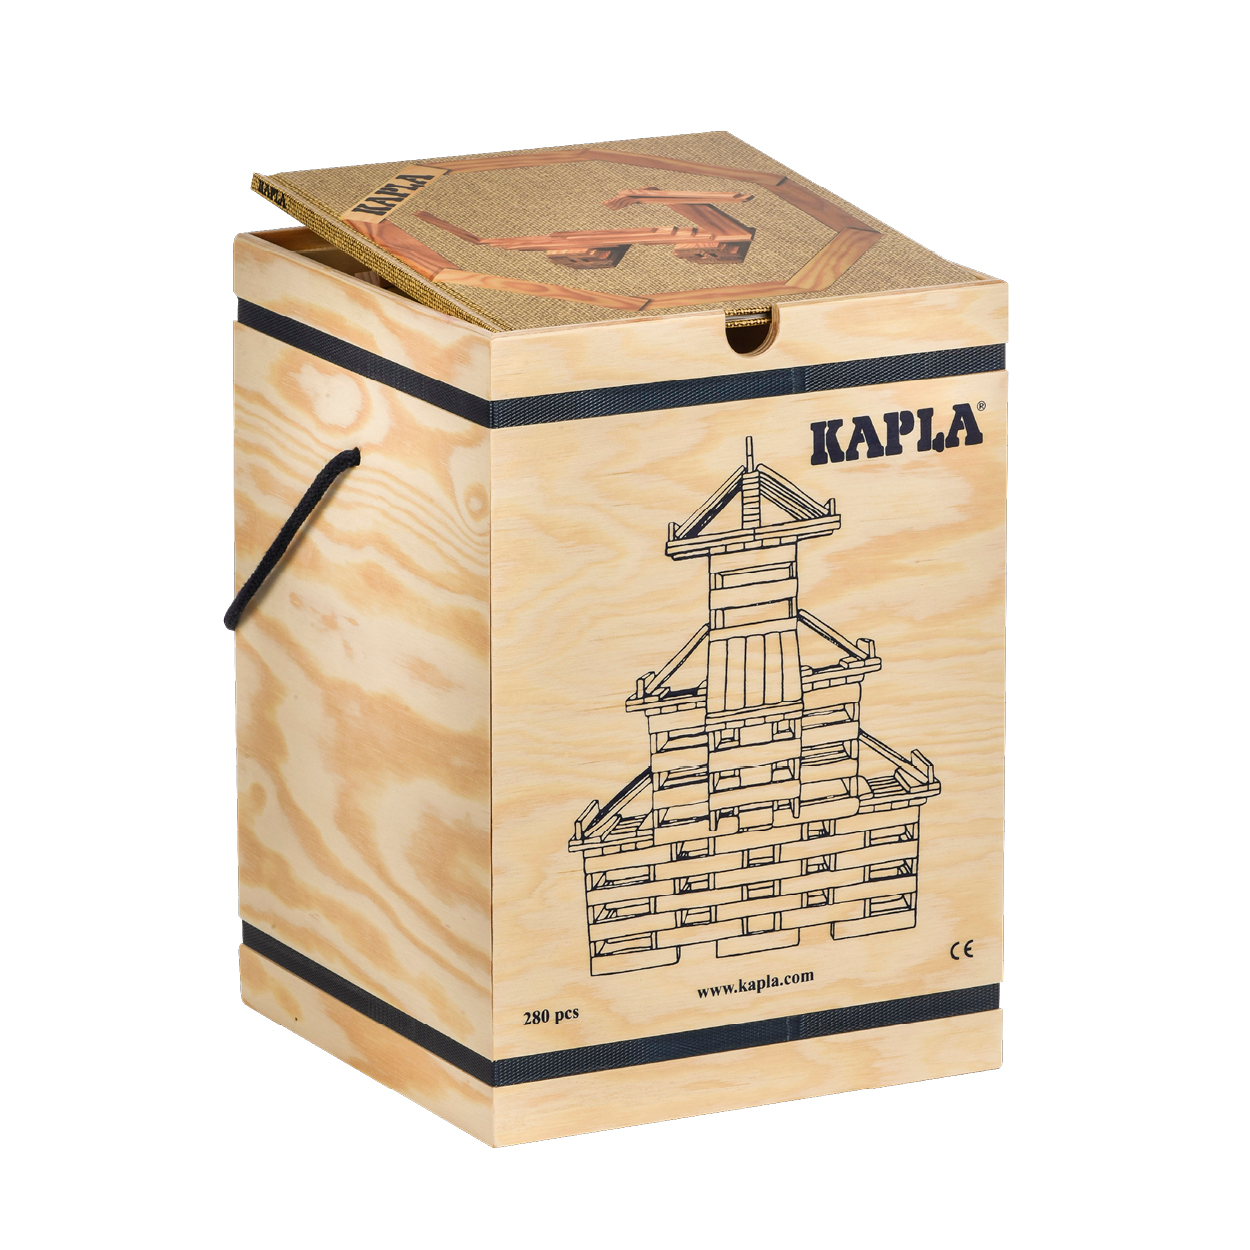 FAP-K-280-Be - KAPLA280 積木盒-#4 米 (280PCS)